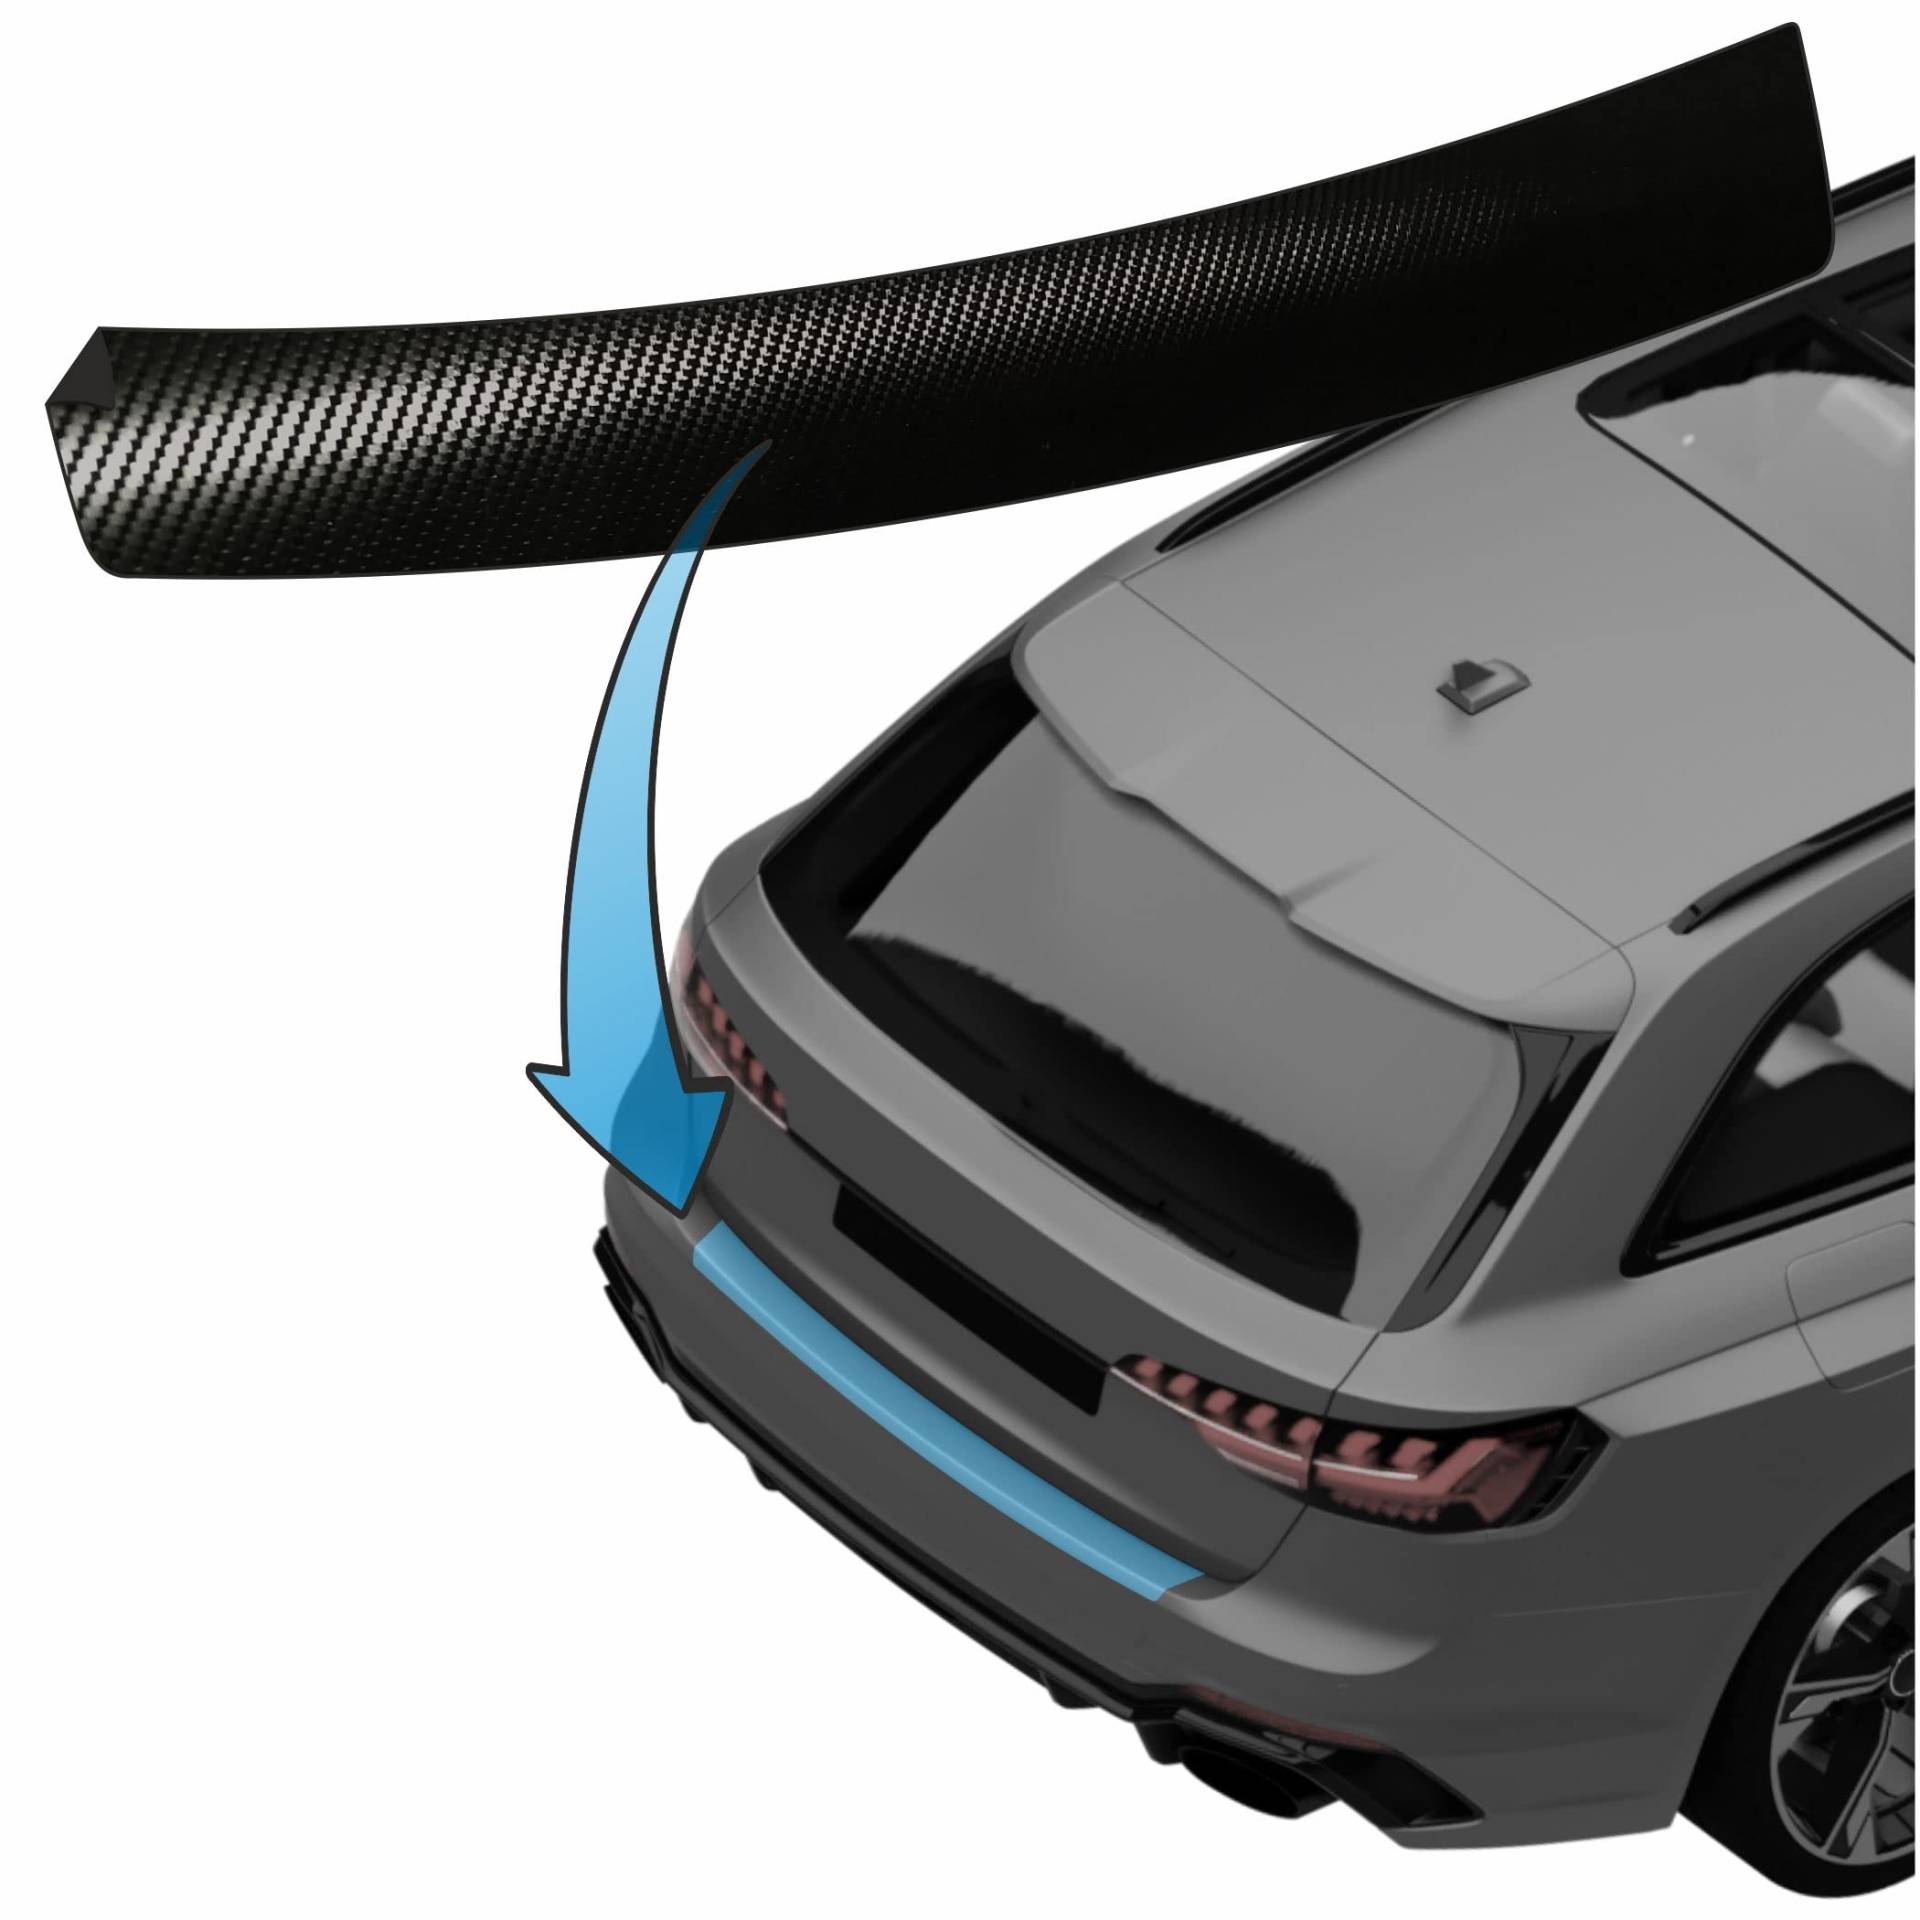 MisterLacky – Lackschutzfolie mit Rakel als Ladekantenschutz Folie passend für VW Touran (II) Typ 5T, IQ-Drive, ab BJ 01/2019 in 3D Carbon schwarz (160µm) von Lackschutzshop